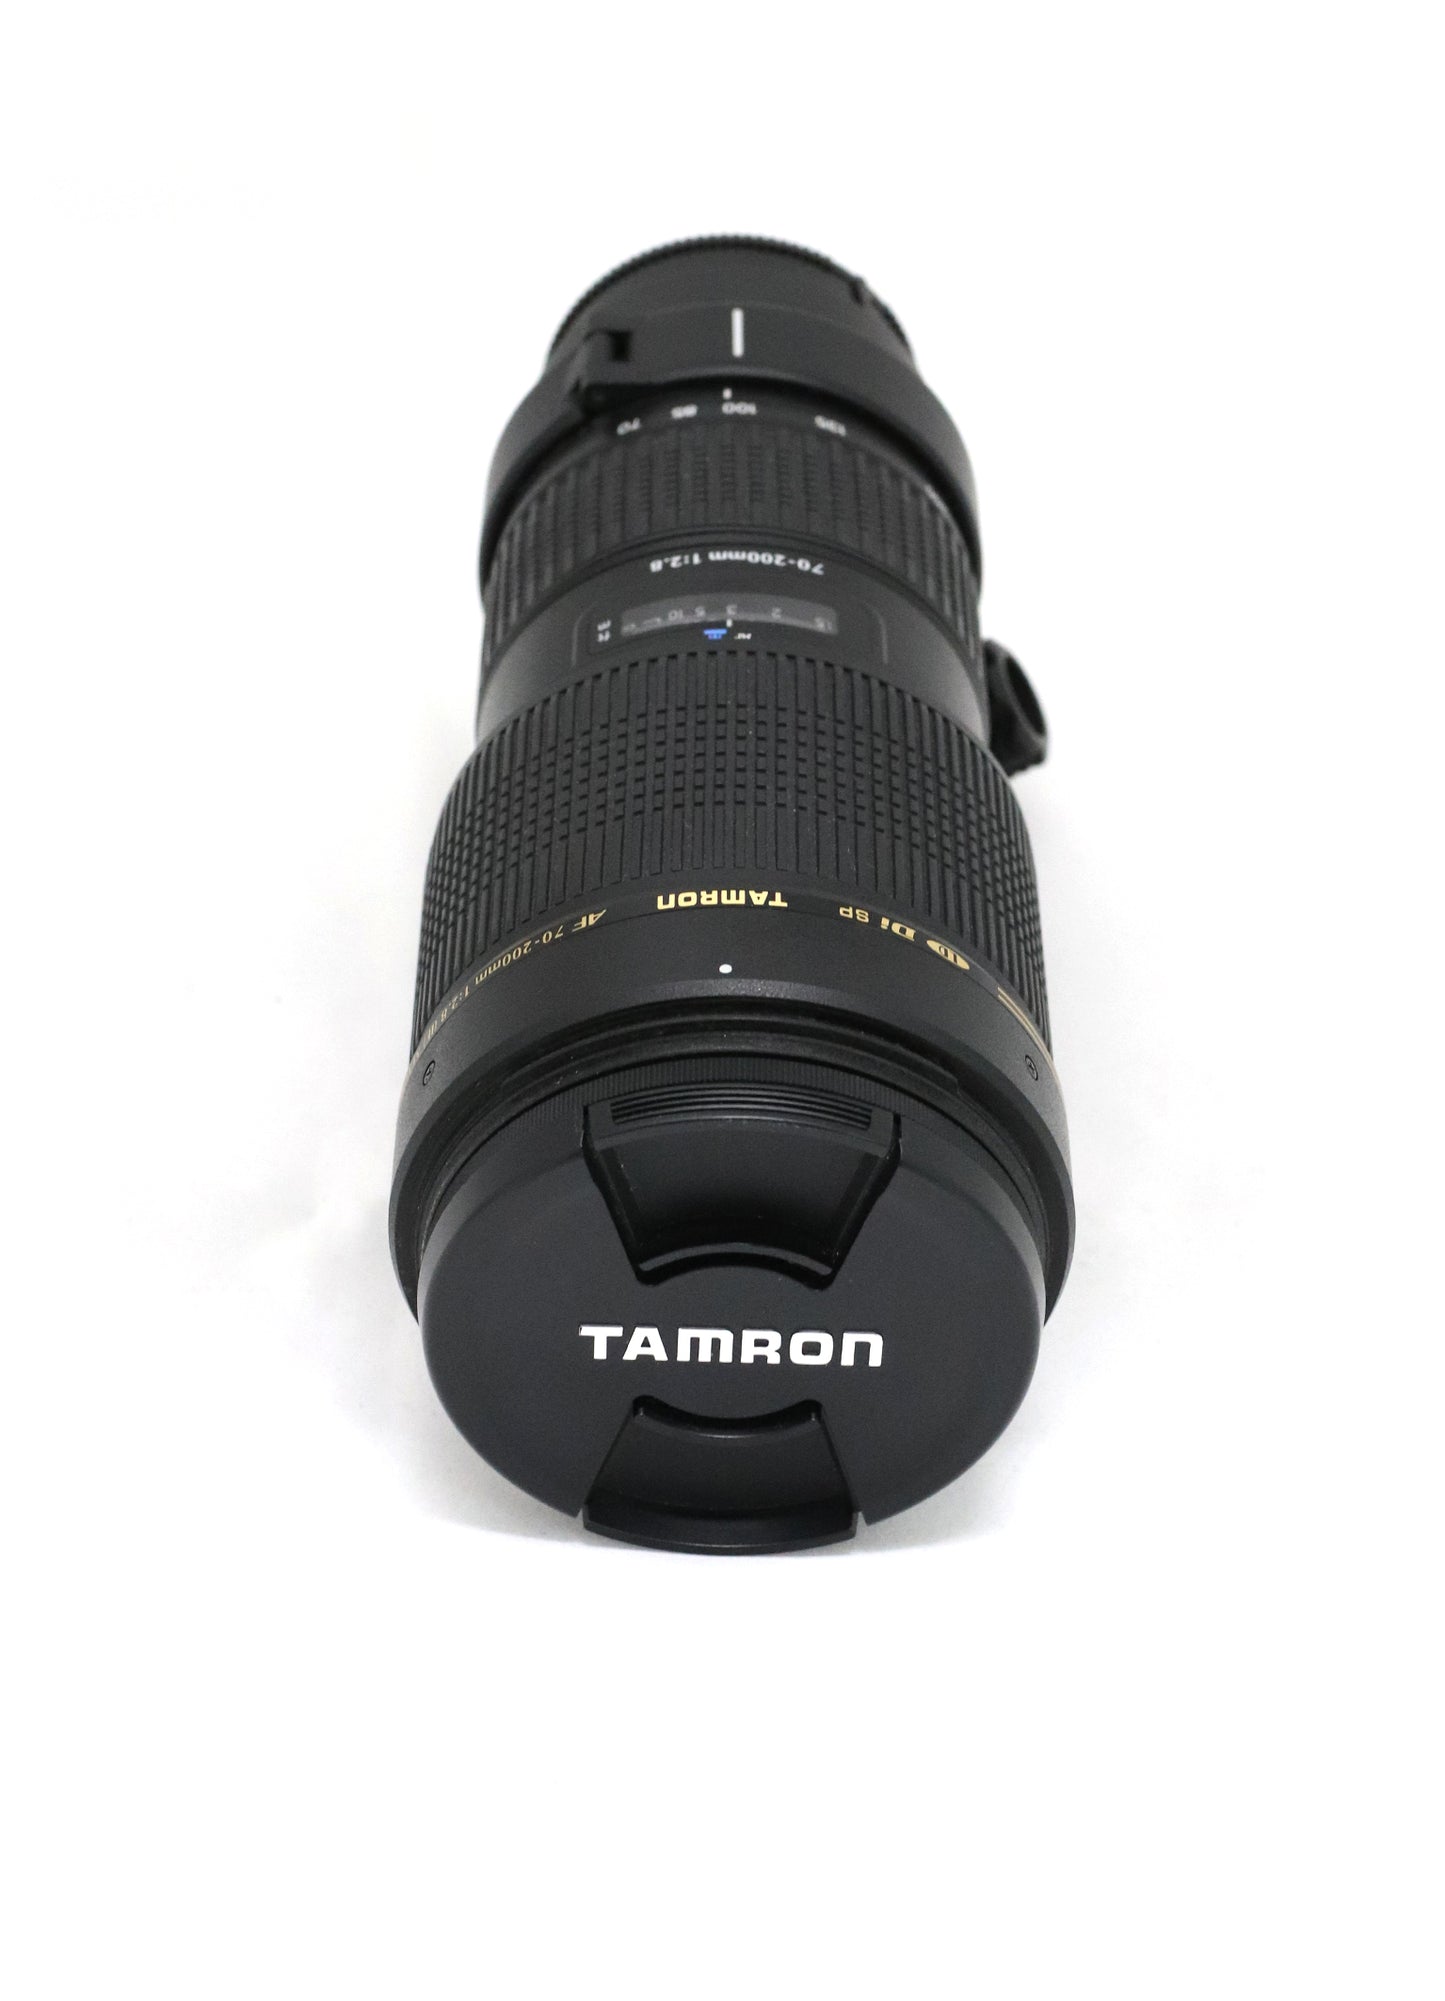 Tamron 70-200 F/2,8 AF Di LD SP IF Macro (Pentax)